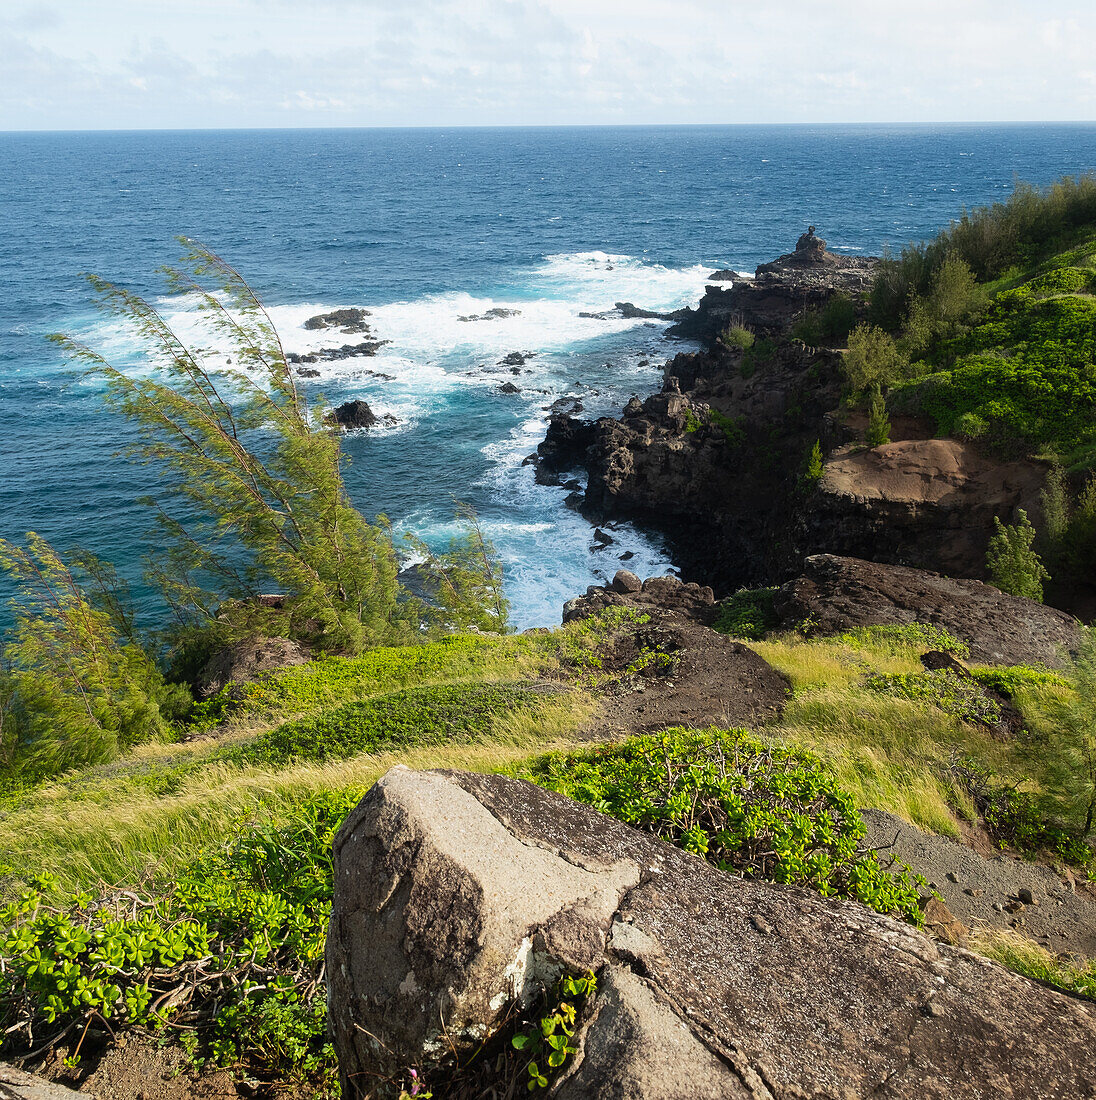 USA, Hawaii, Maui, Meeresküste in West Maui Natural Area Reserve